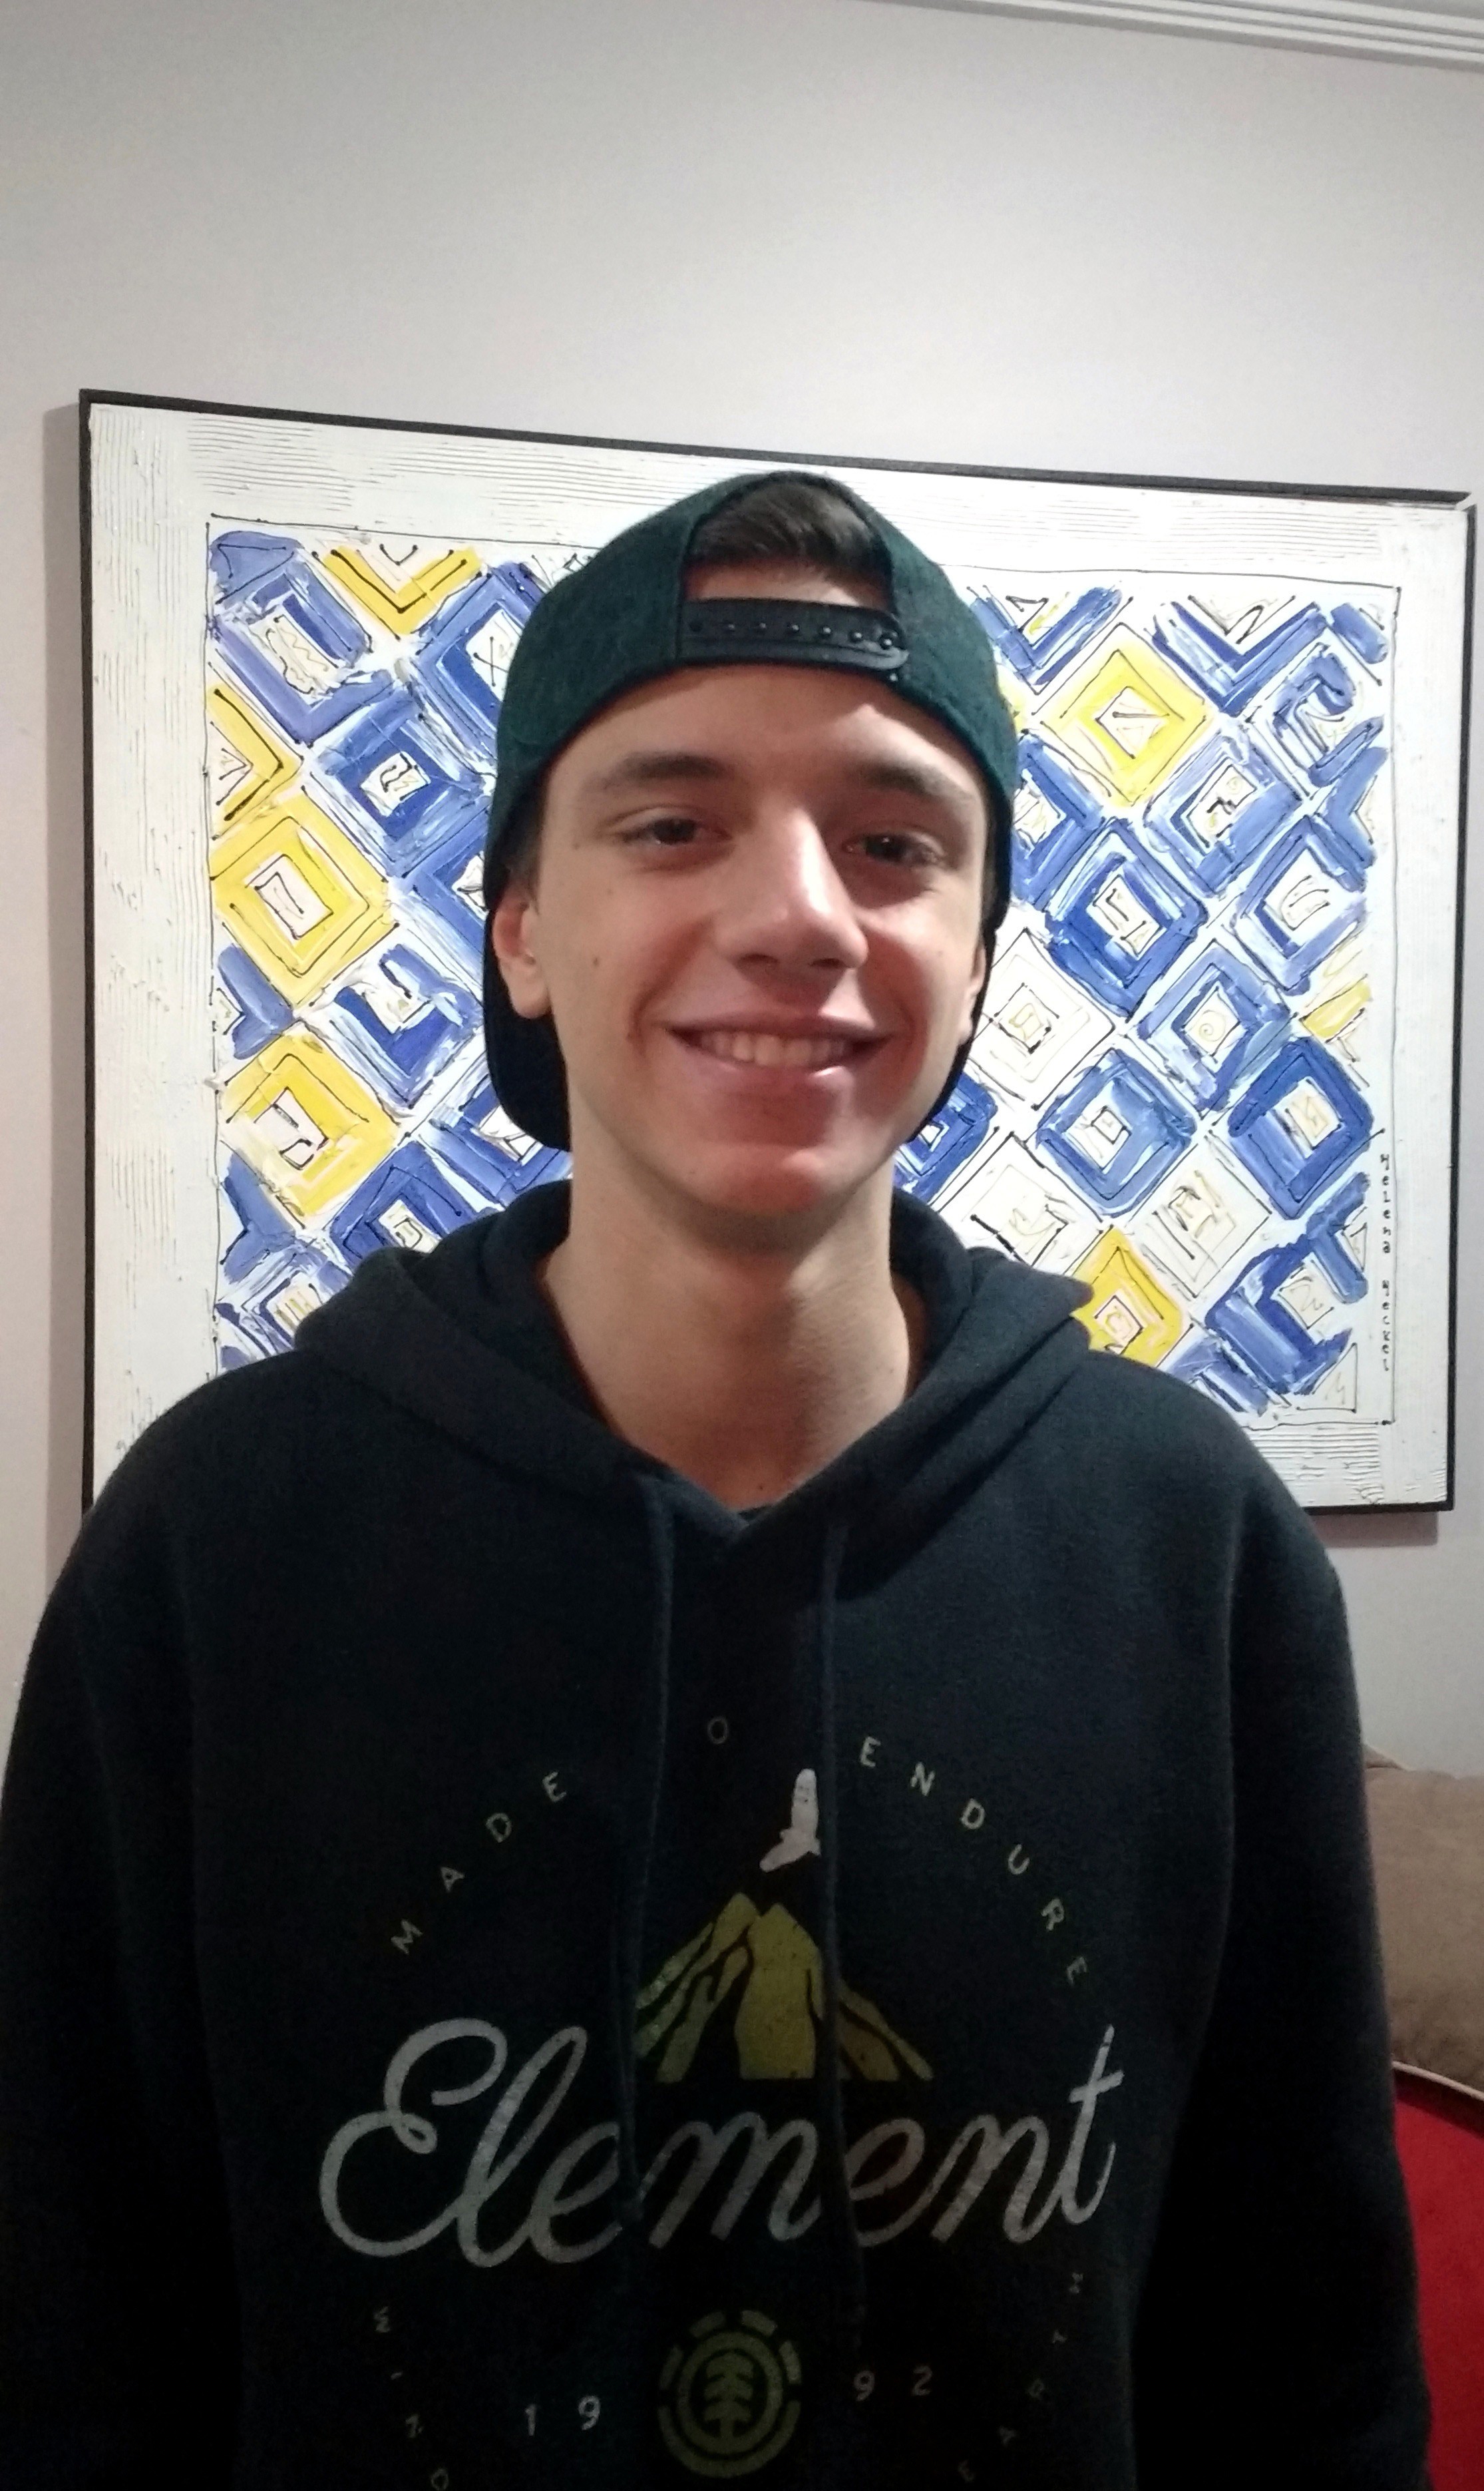 João Vitor Guerreiro Dias - tem 16 anos, é de São Paulo (SP) e cursa o 3º ano do ensino médio no colégio Etapa (Foto: divulgação)